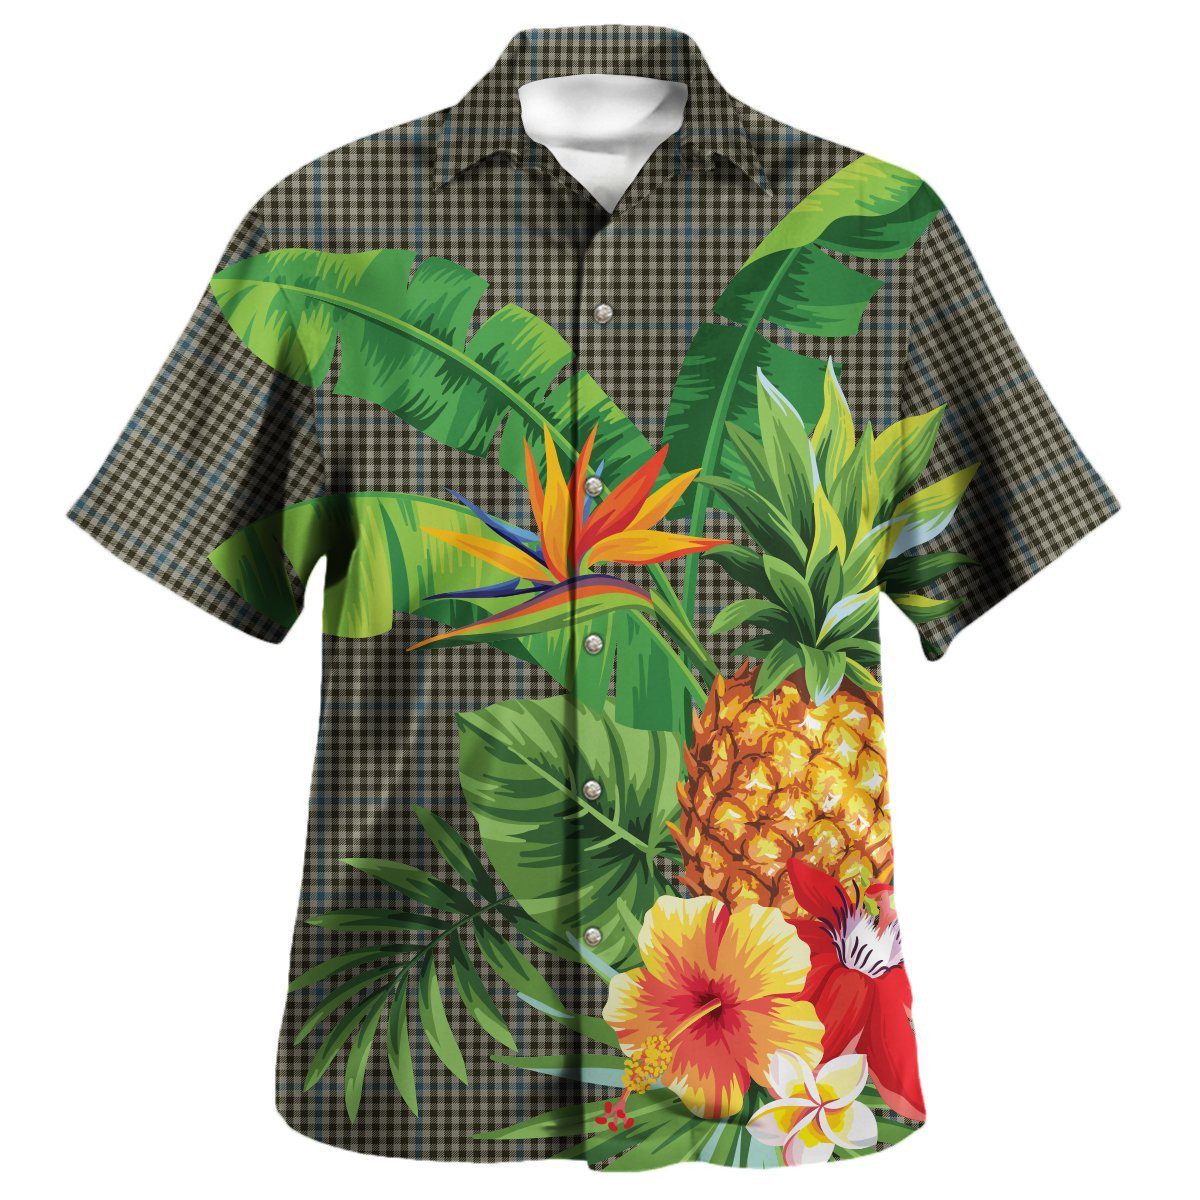 Haig Check Tartan Aloha Shirt version 2